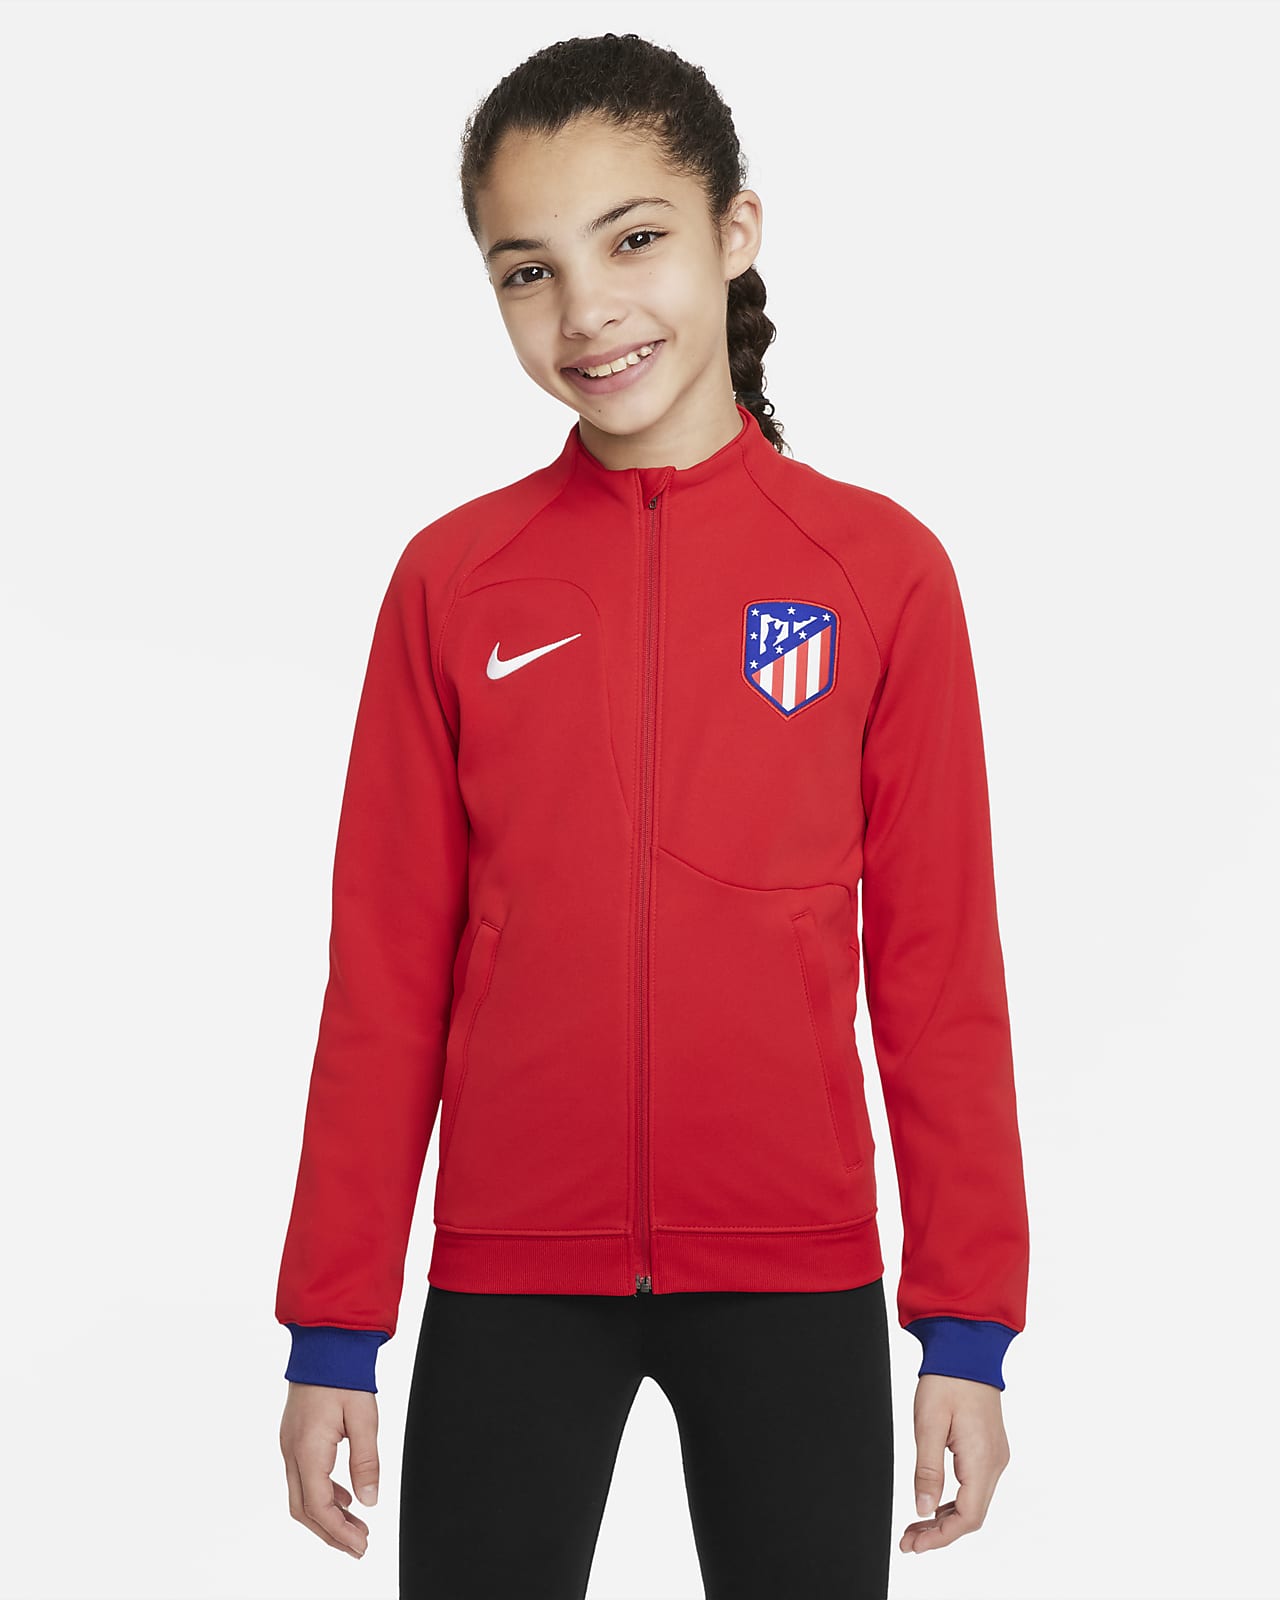 Atlético Madrid Academy Pro Older Kids' Nike Football Jacket